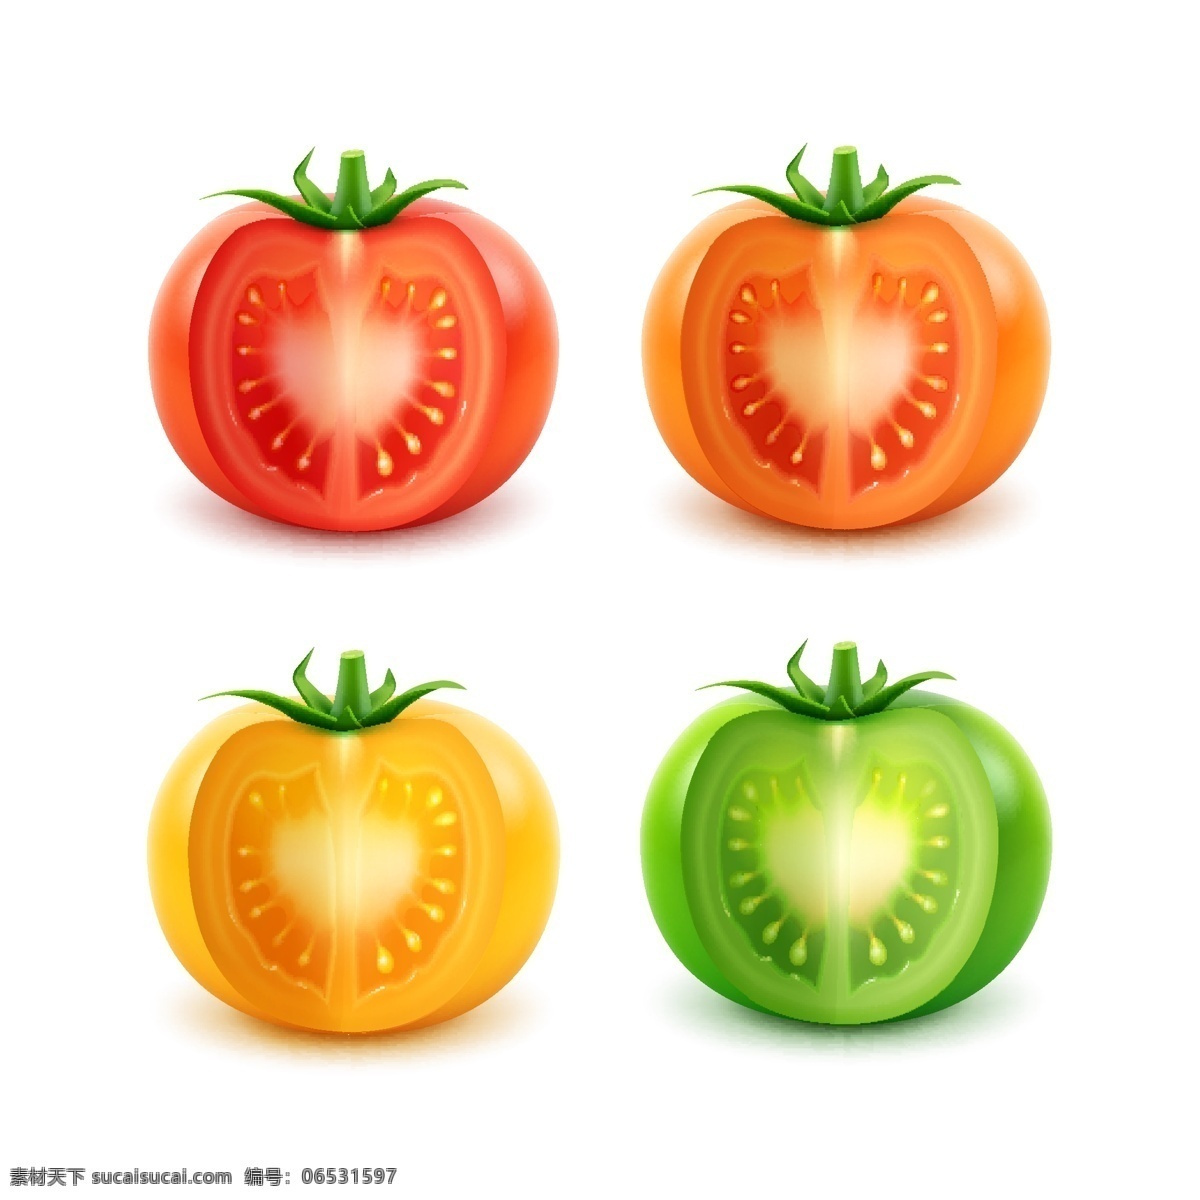 不同 颜色 西红柿 番茄 红色番茄 橙色番茄 黄色番茄 绿色番茄 食材 果蔬 矢量素材